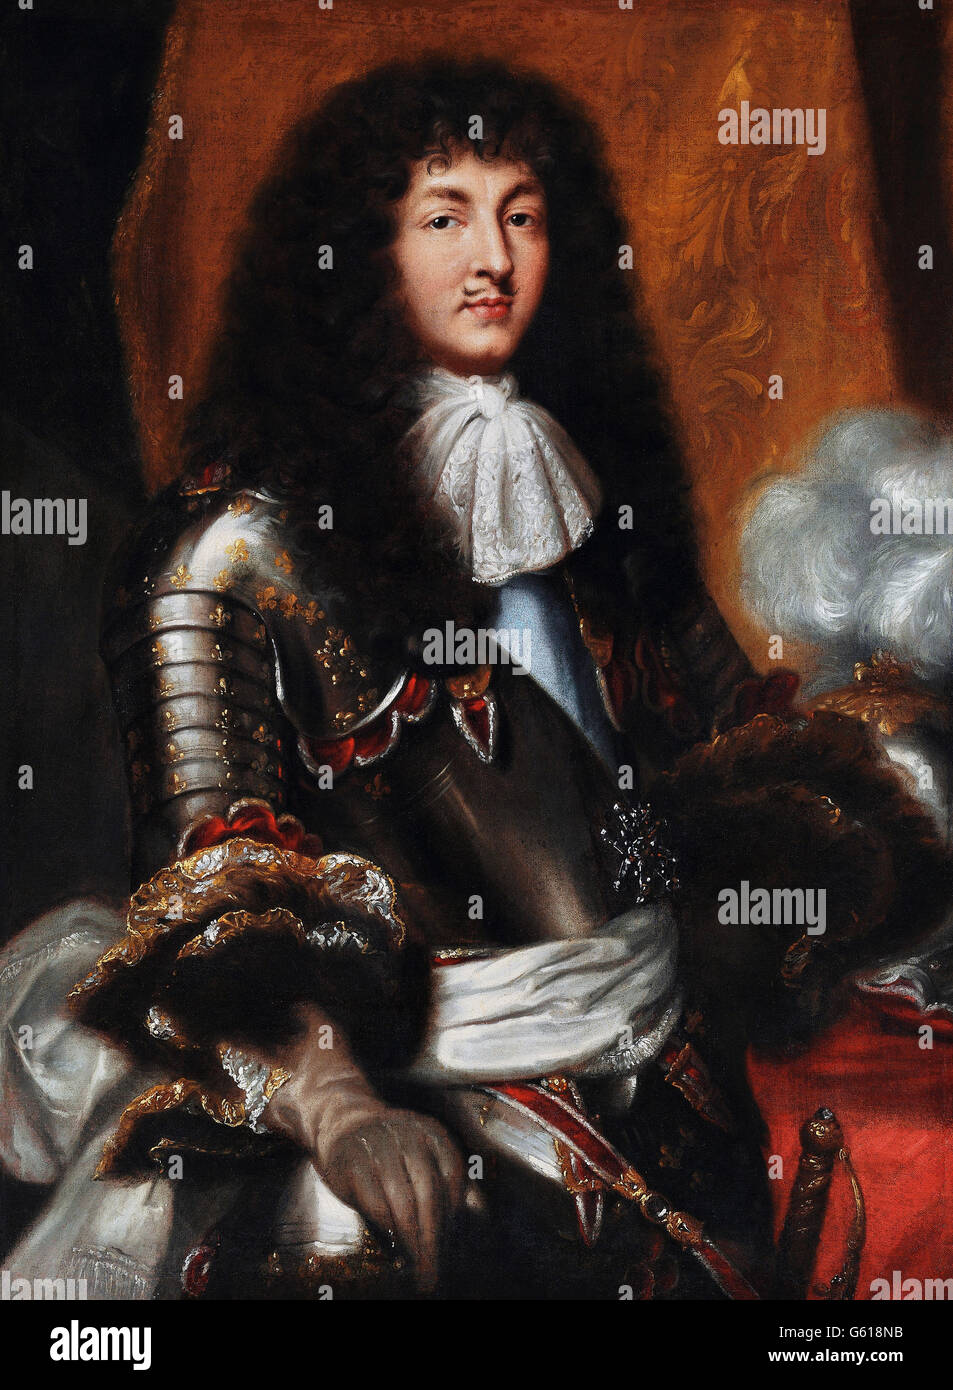 El rey Luis XIV de Francia Foto de stock